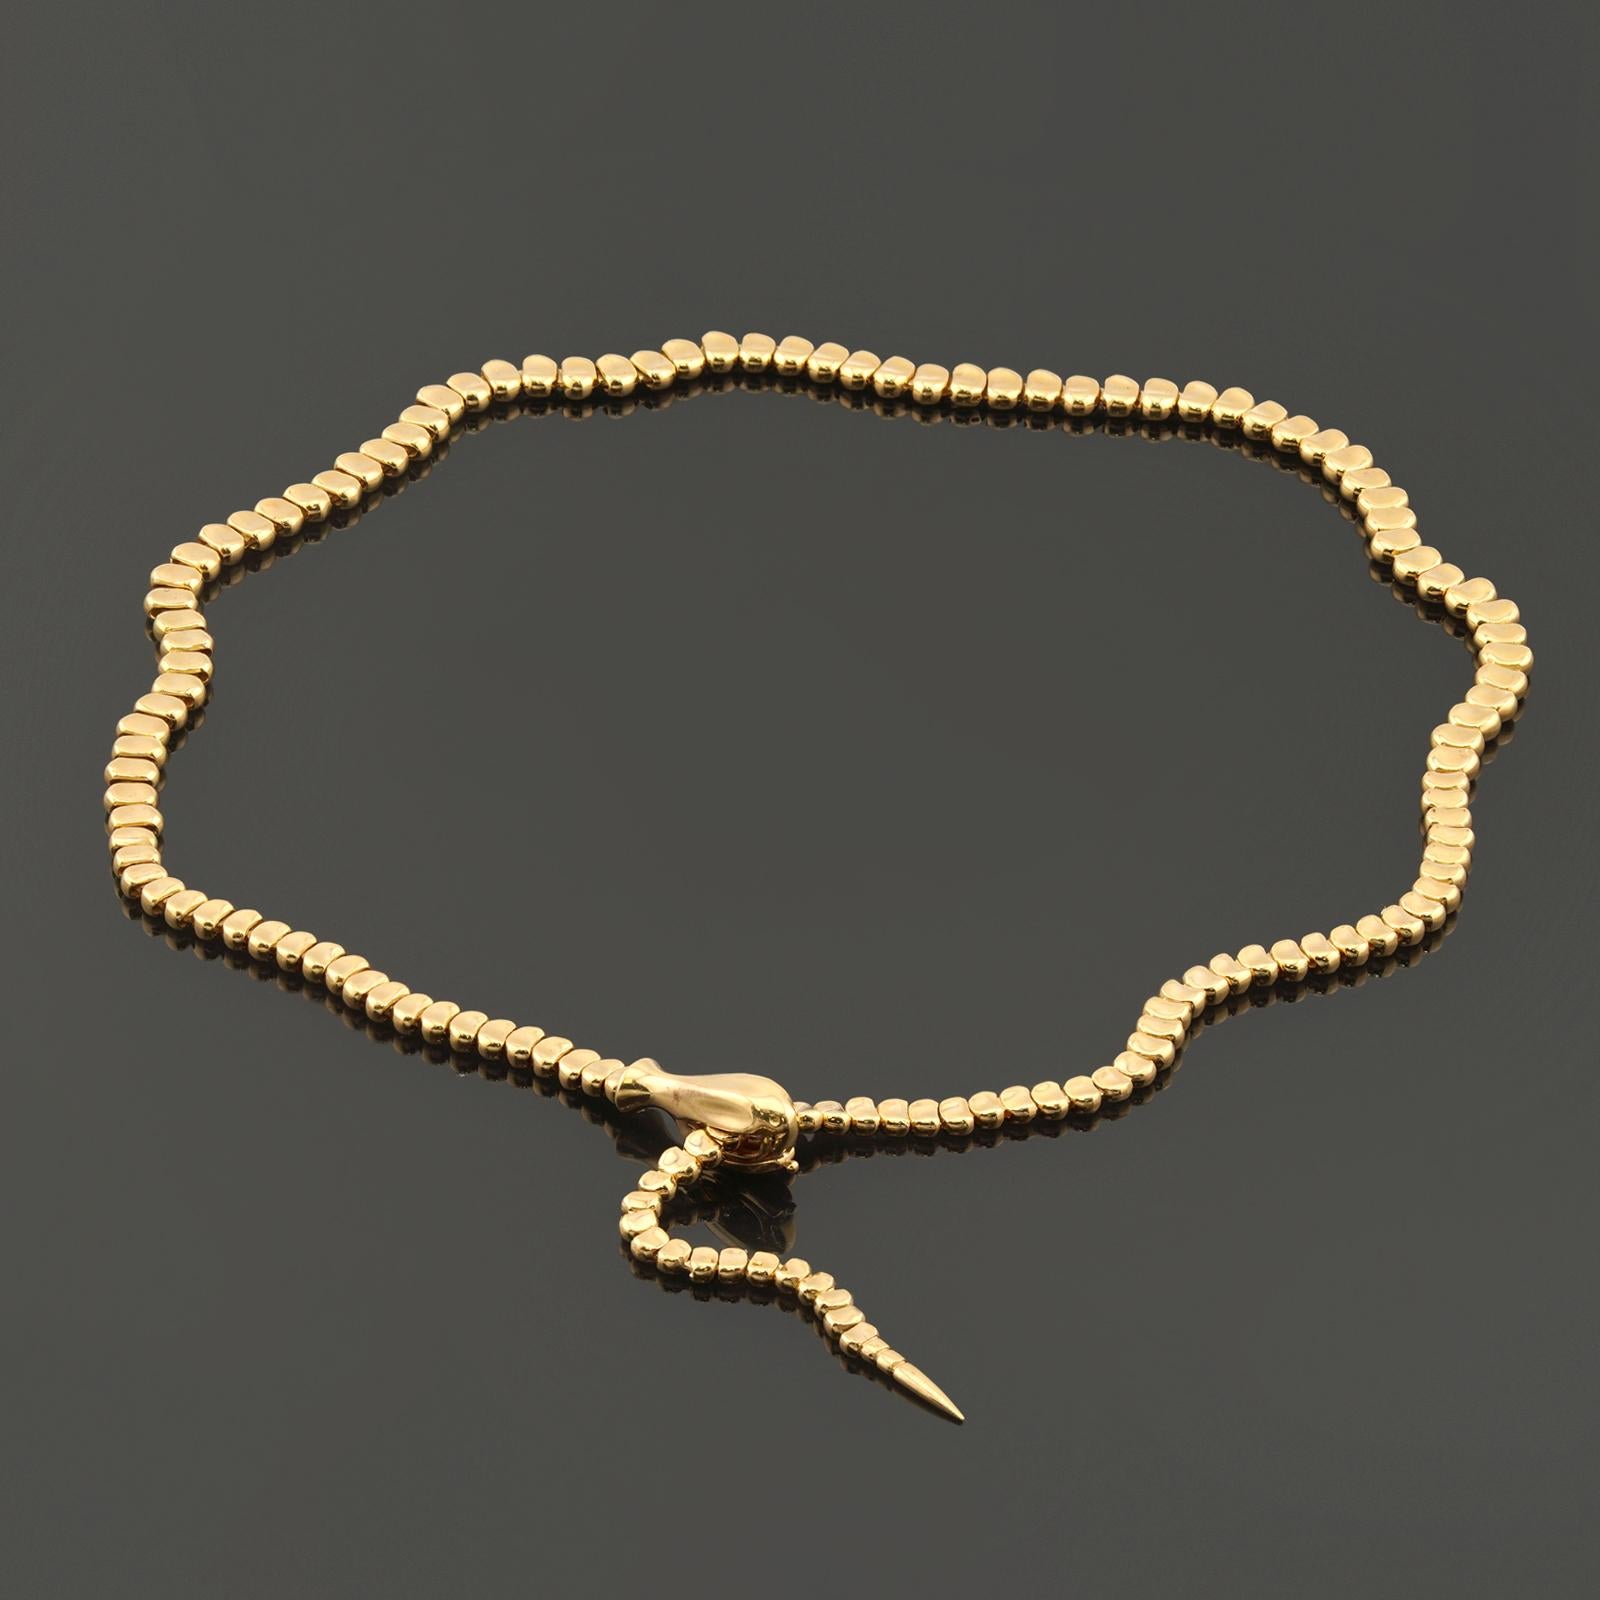 Diese wunderschöne, authentische Halskette von Tiffany & Co. wurde von Elsa Peretti entworfen und zeichnet sich durch eine fließende Serpentinenform aus, die aus 18 Karat Gelbgold gefertigt wurde. Die Länge ist einstellbar. Hergestellt in den